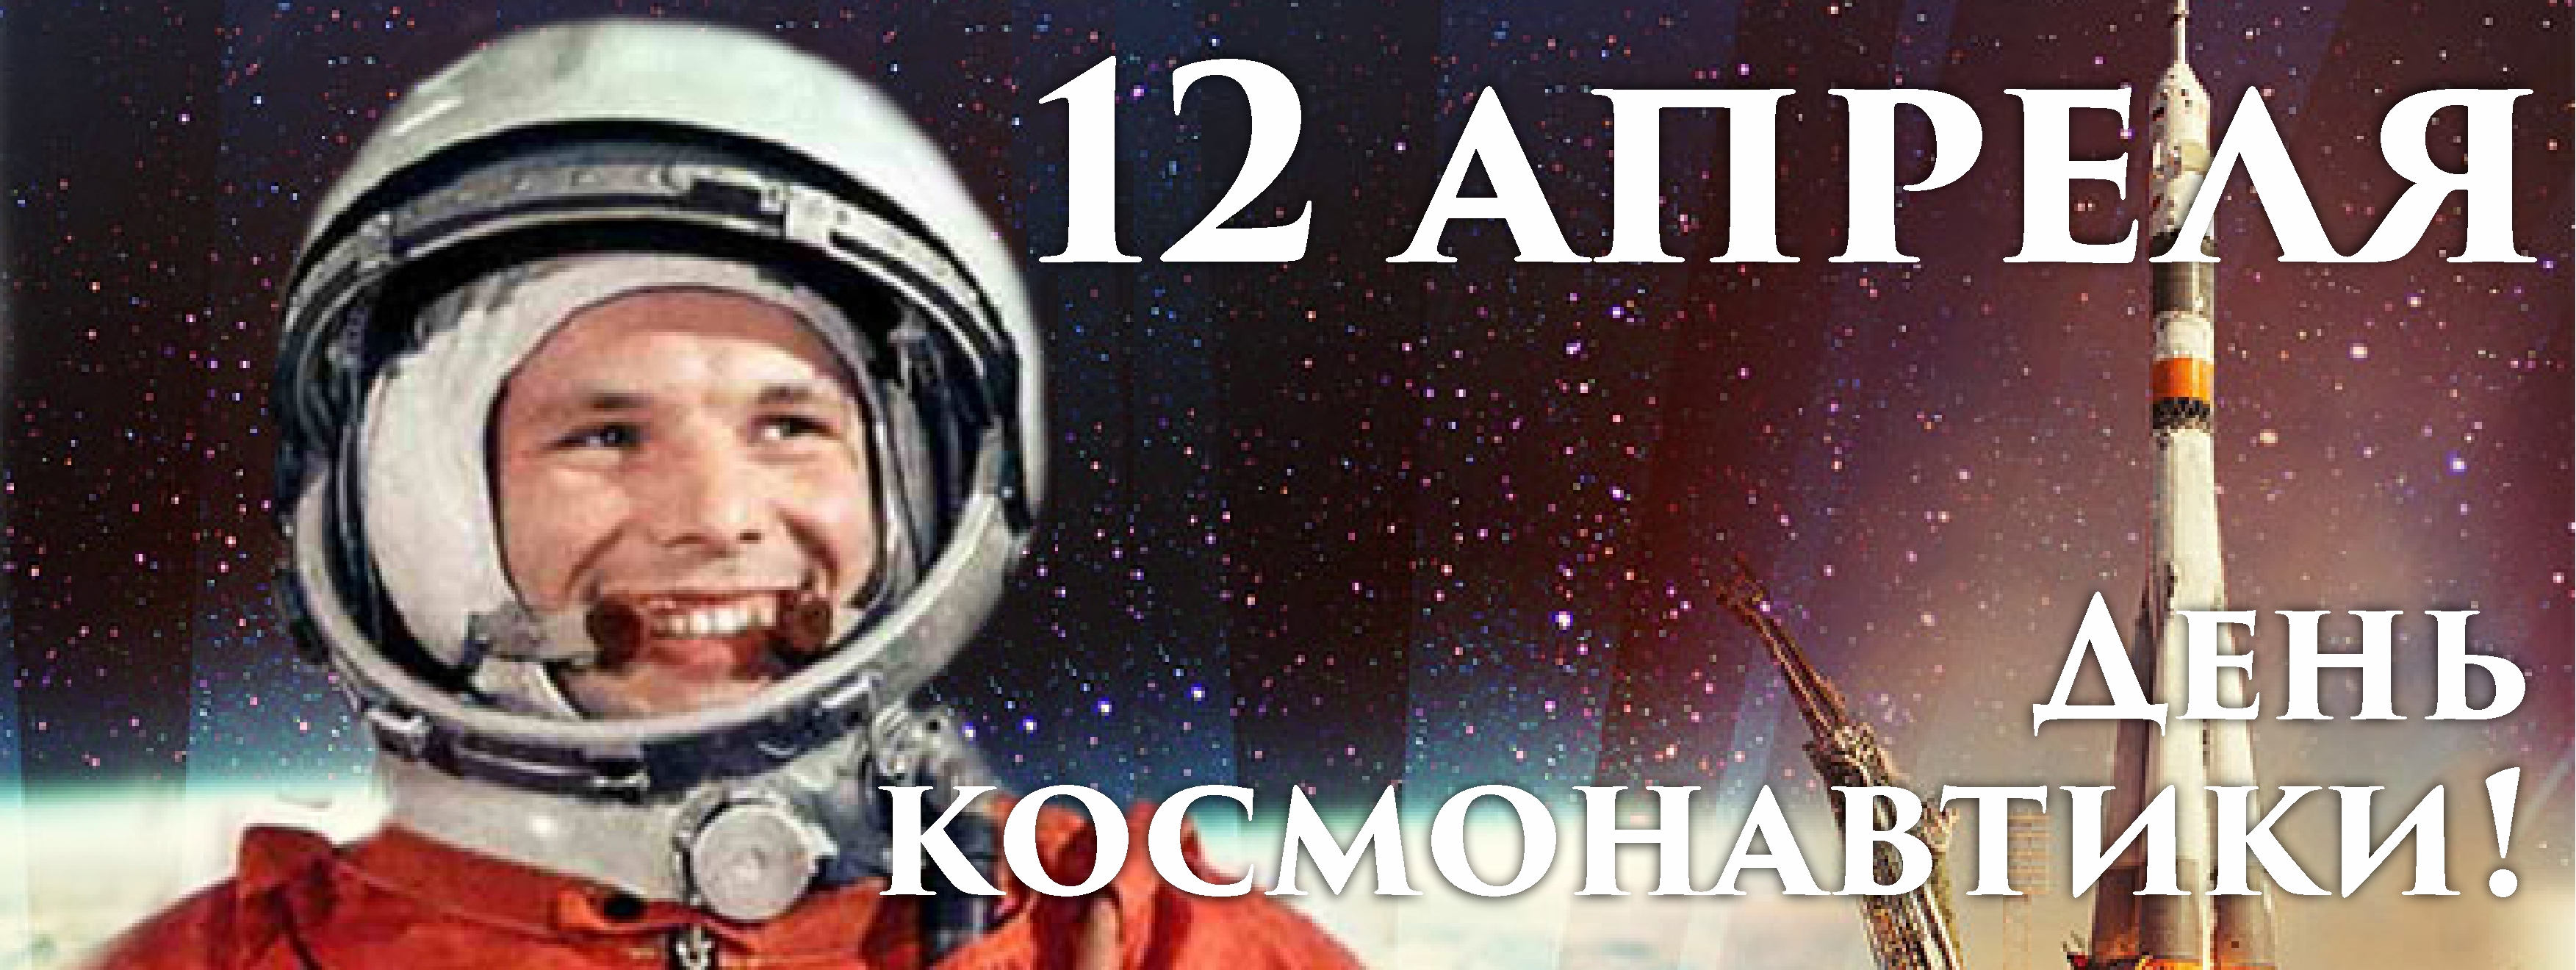 Какой праздник 12 апреля в россии. День космонавтики. 12 Апреля день космонавтики. День Космонавта. День космонавтики картинки.